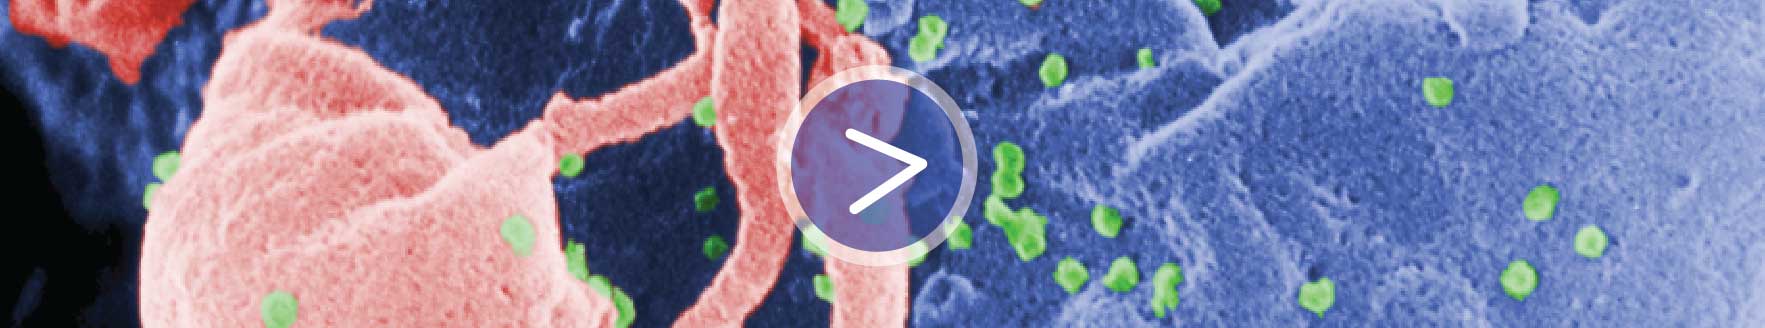 Virus sida (en rosa) atacando un tejido (en azul). Símbolo "play" en medio.